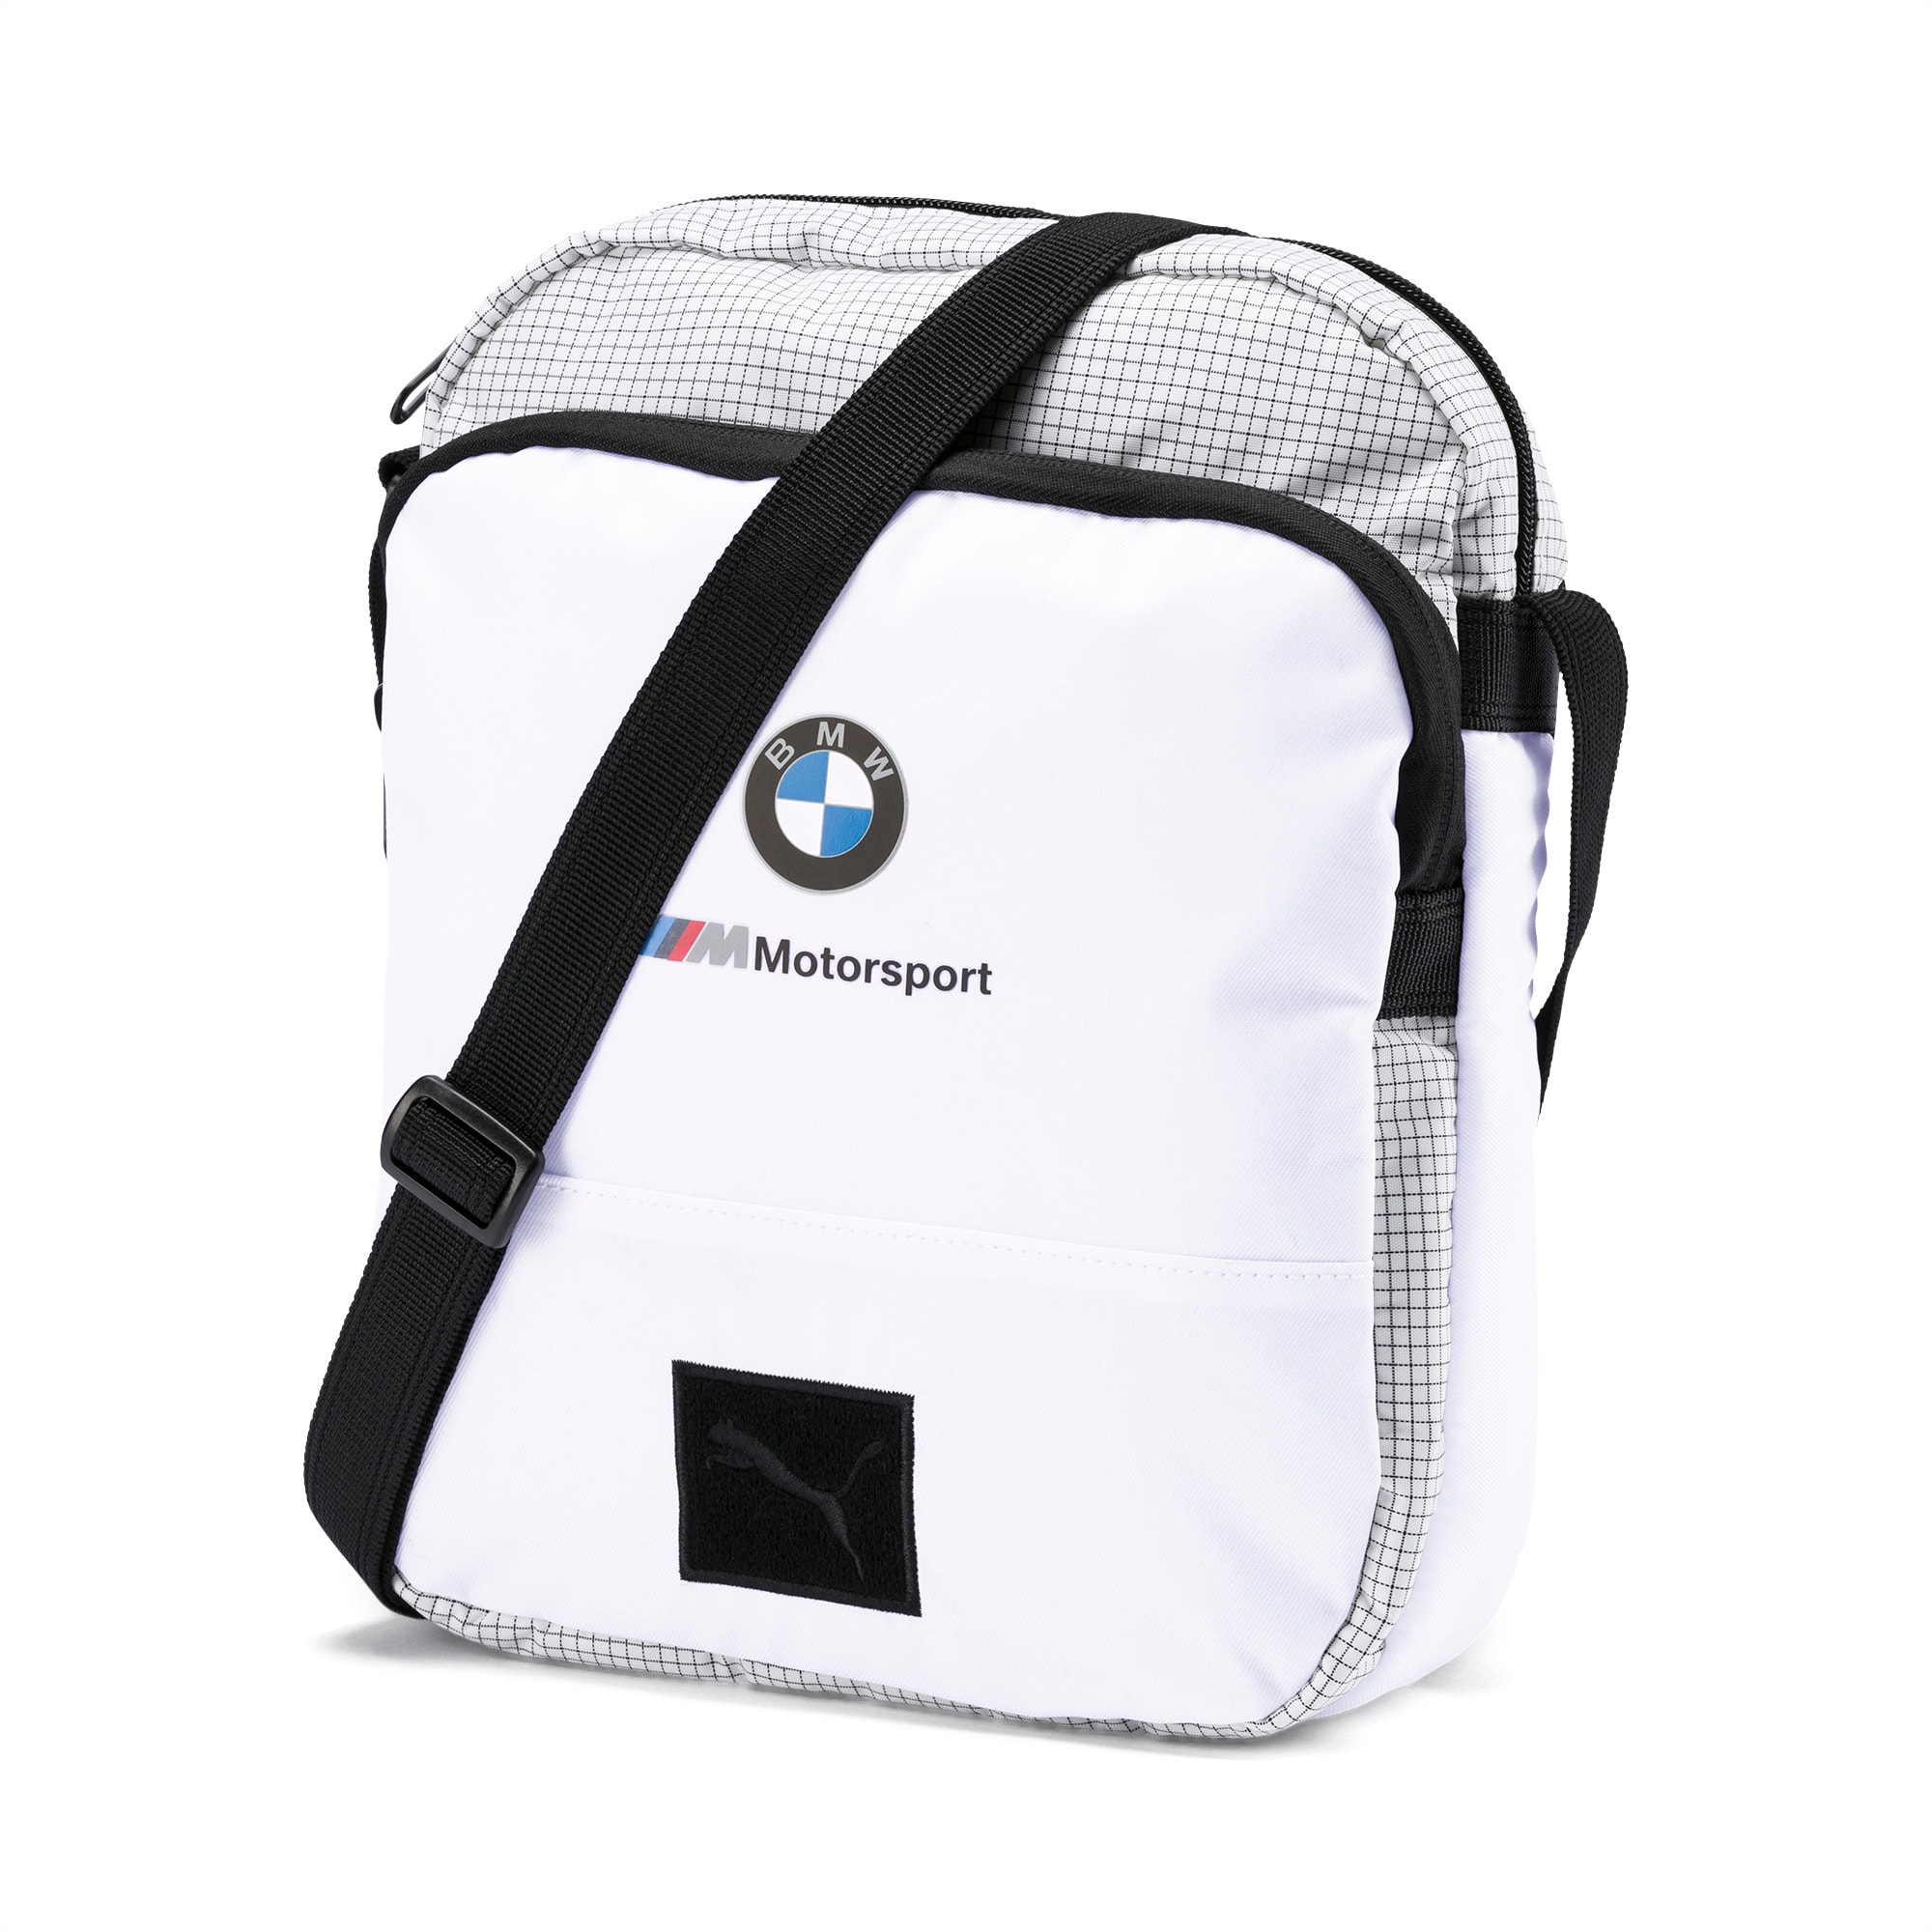 bmw m motorsport large portable bag